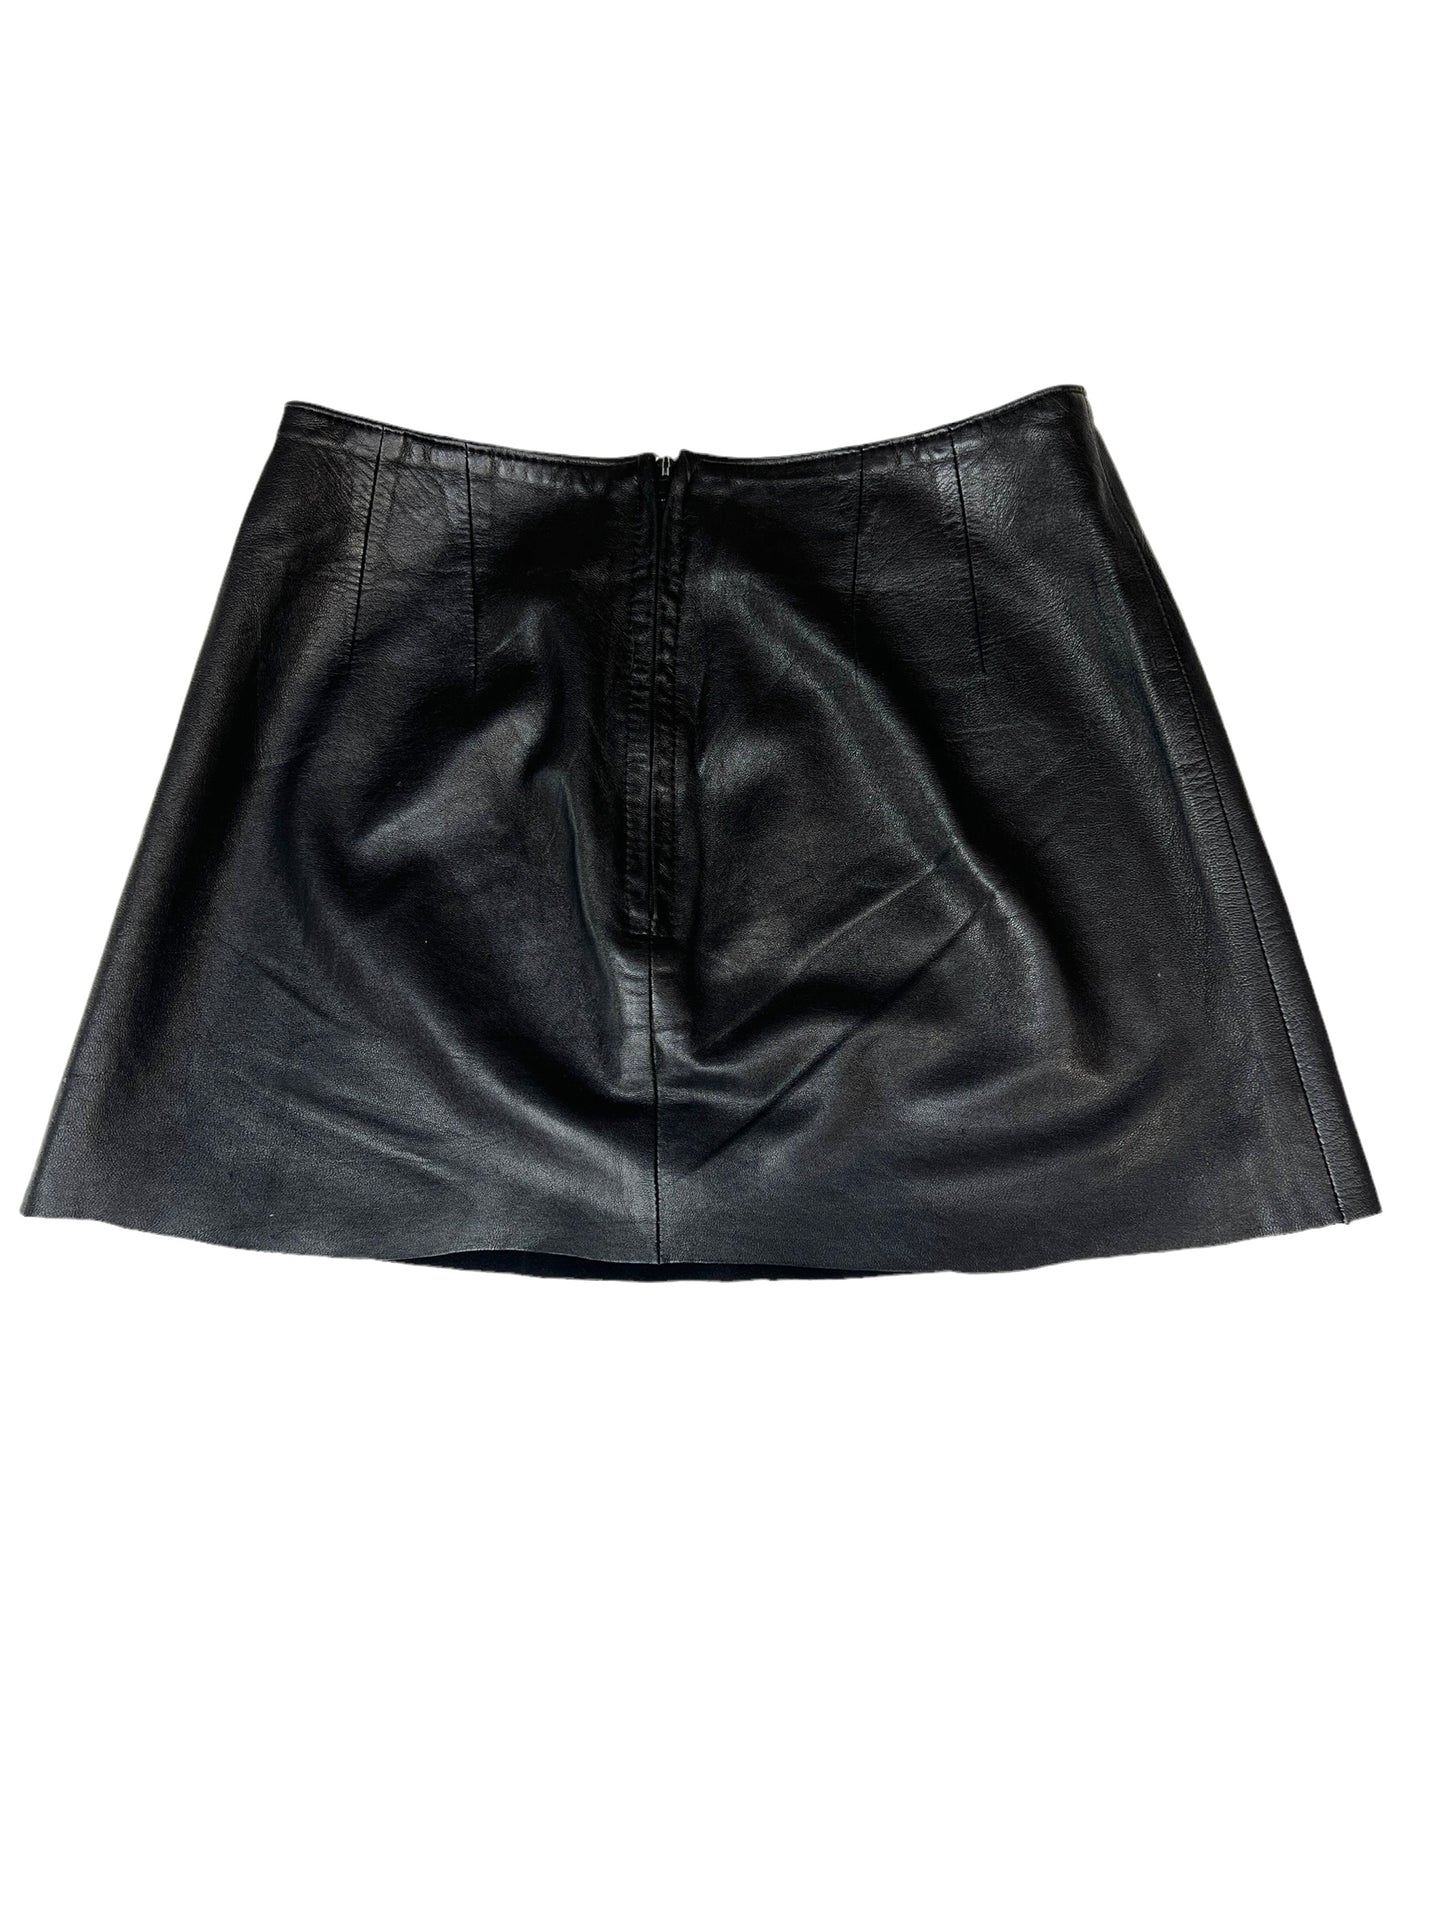 Vintage Leather Mini Skirt - S